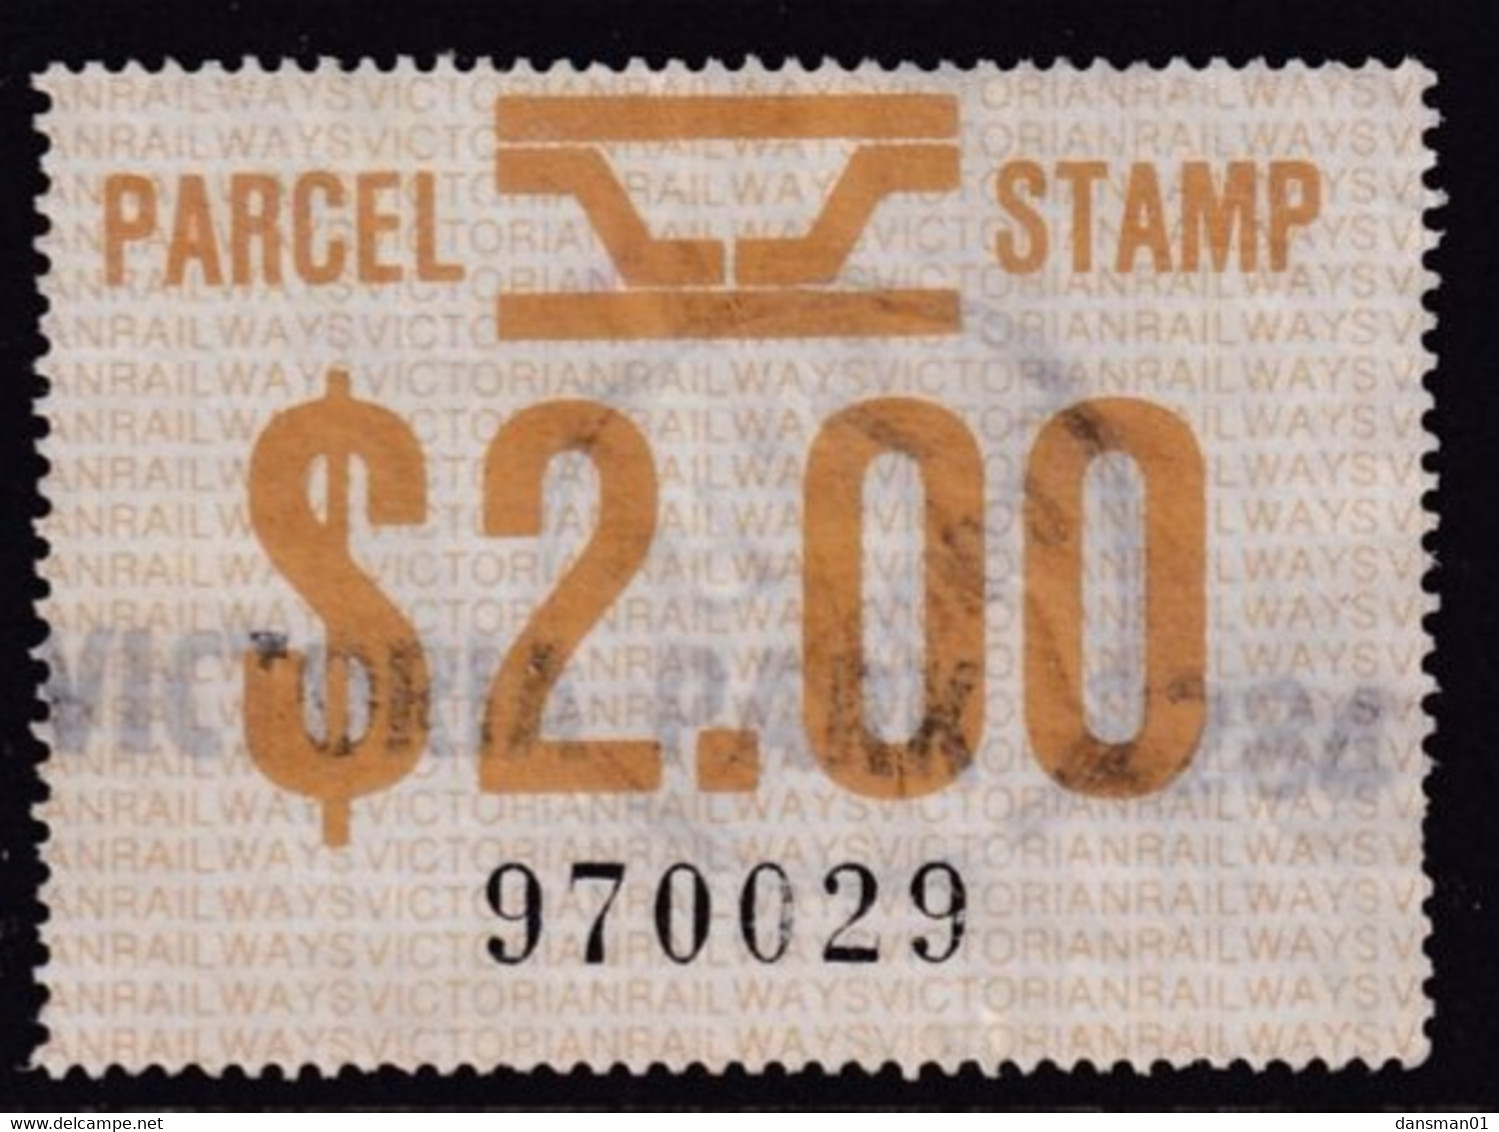 Victoria 1981 Railway Parcel Stamp $2 Used - Variétés Et Curiosités